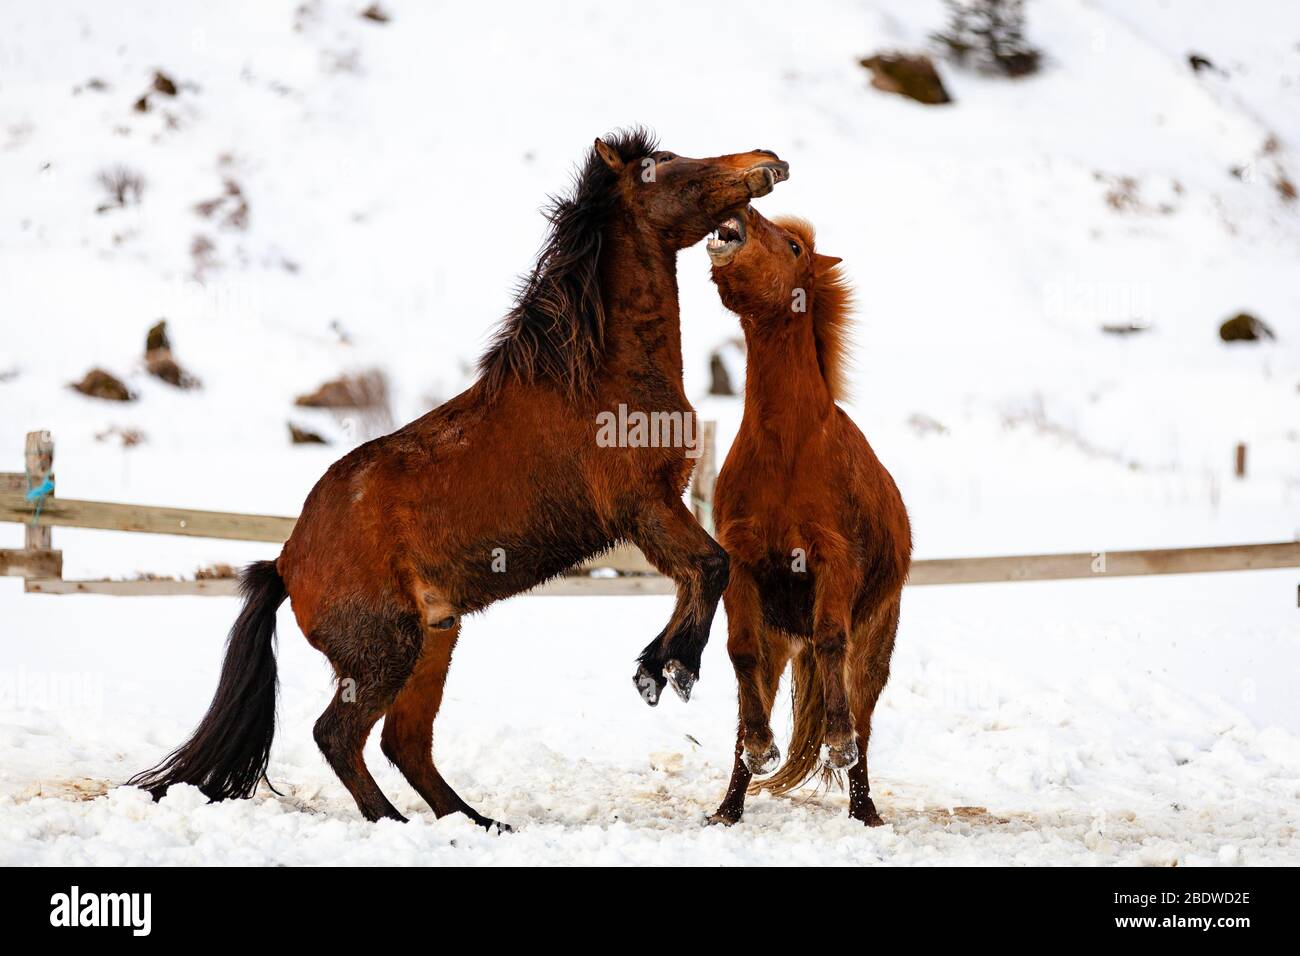 Isländische Pferde (Equus ferus caballus) kämpfen oder spielen im Schnee am reynisfjara, Island Stockfoto